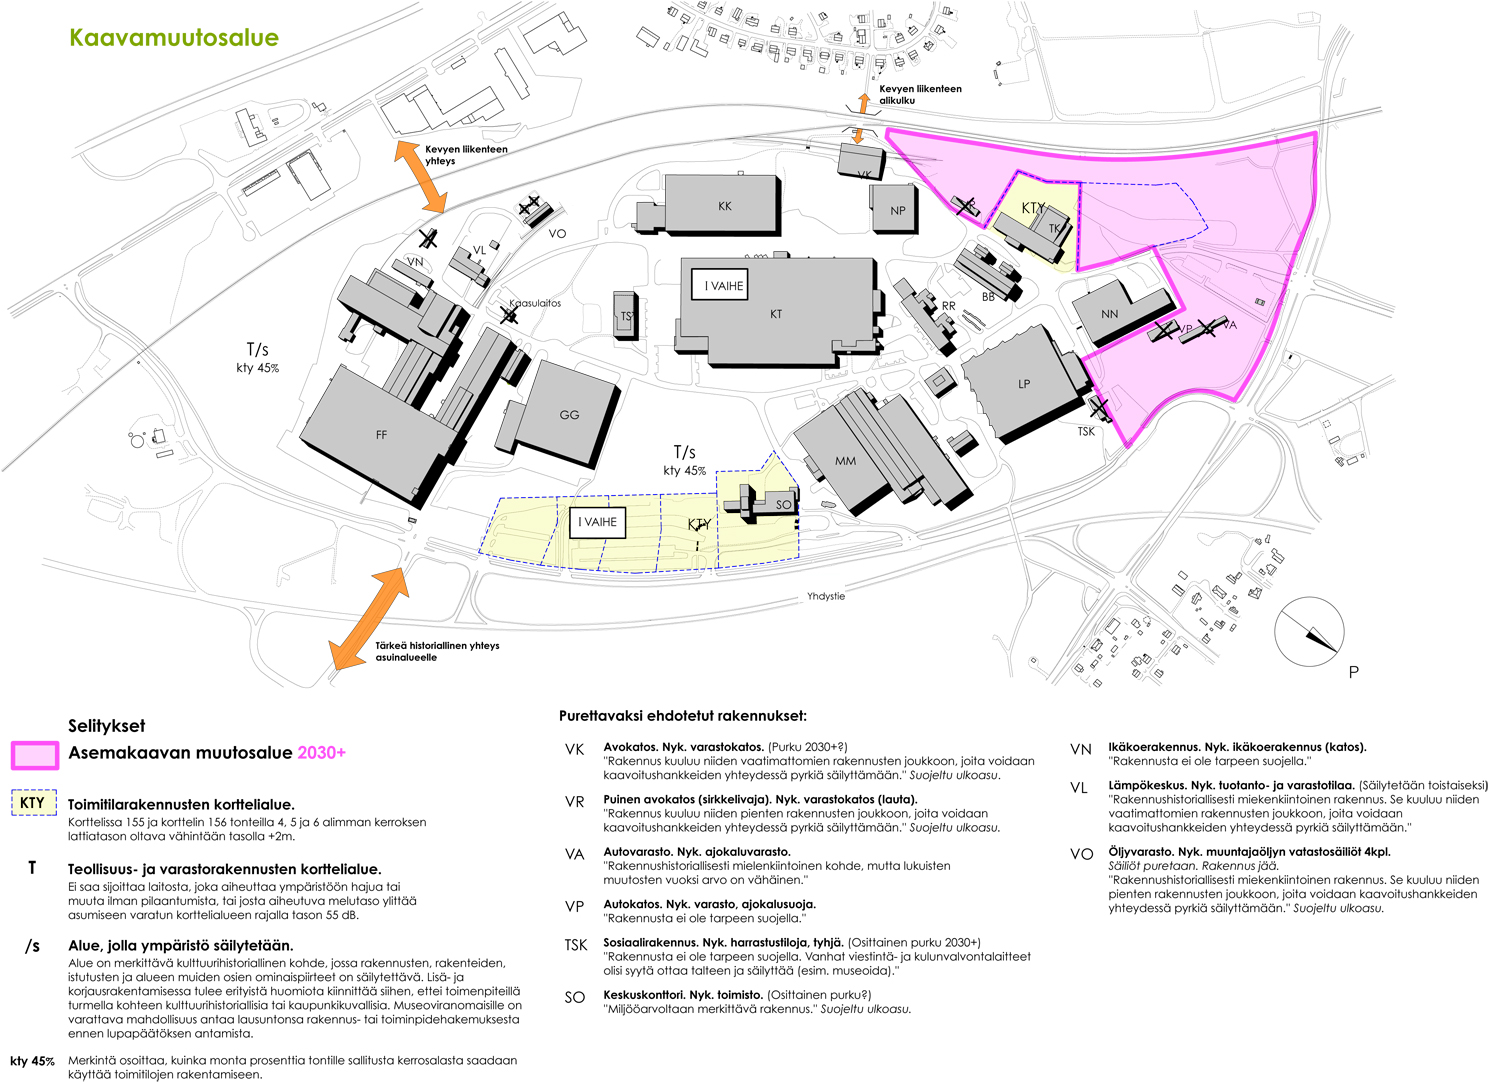 Strömberg Park development, Vaasa FI, 2014 – Helsinkizurich